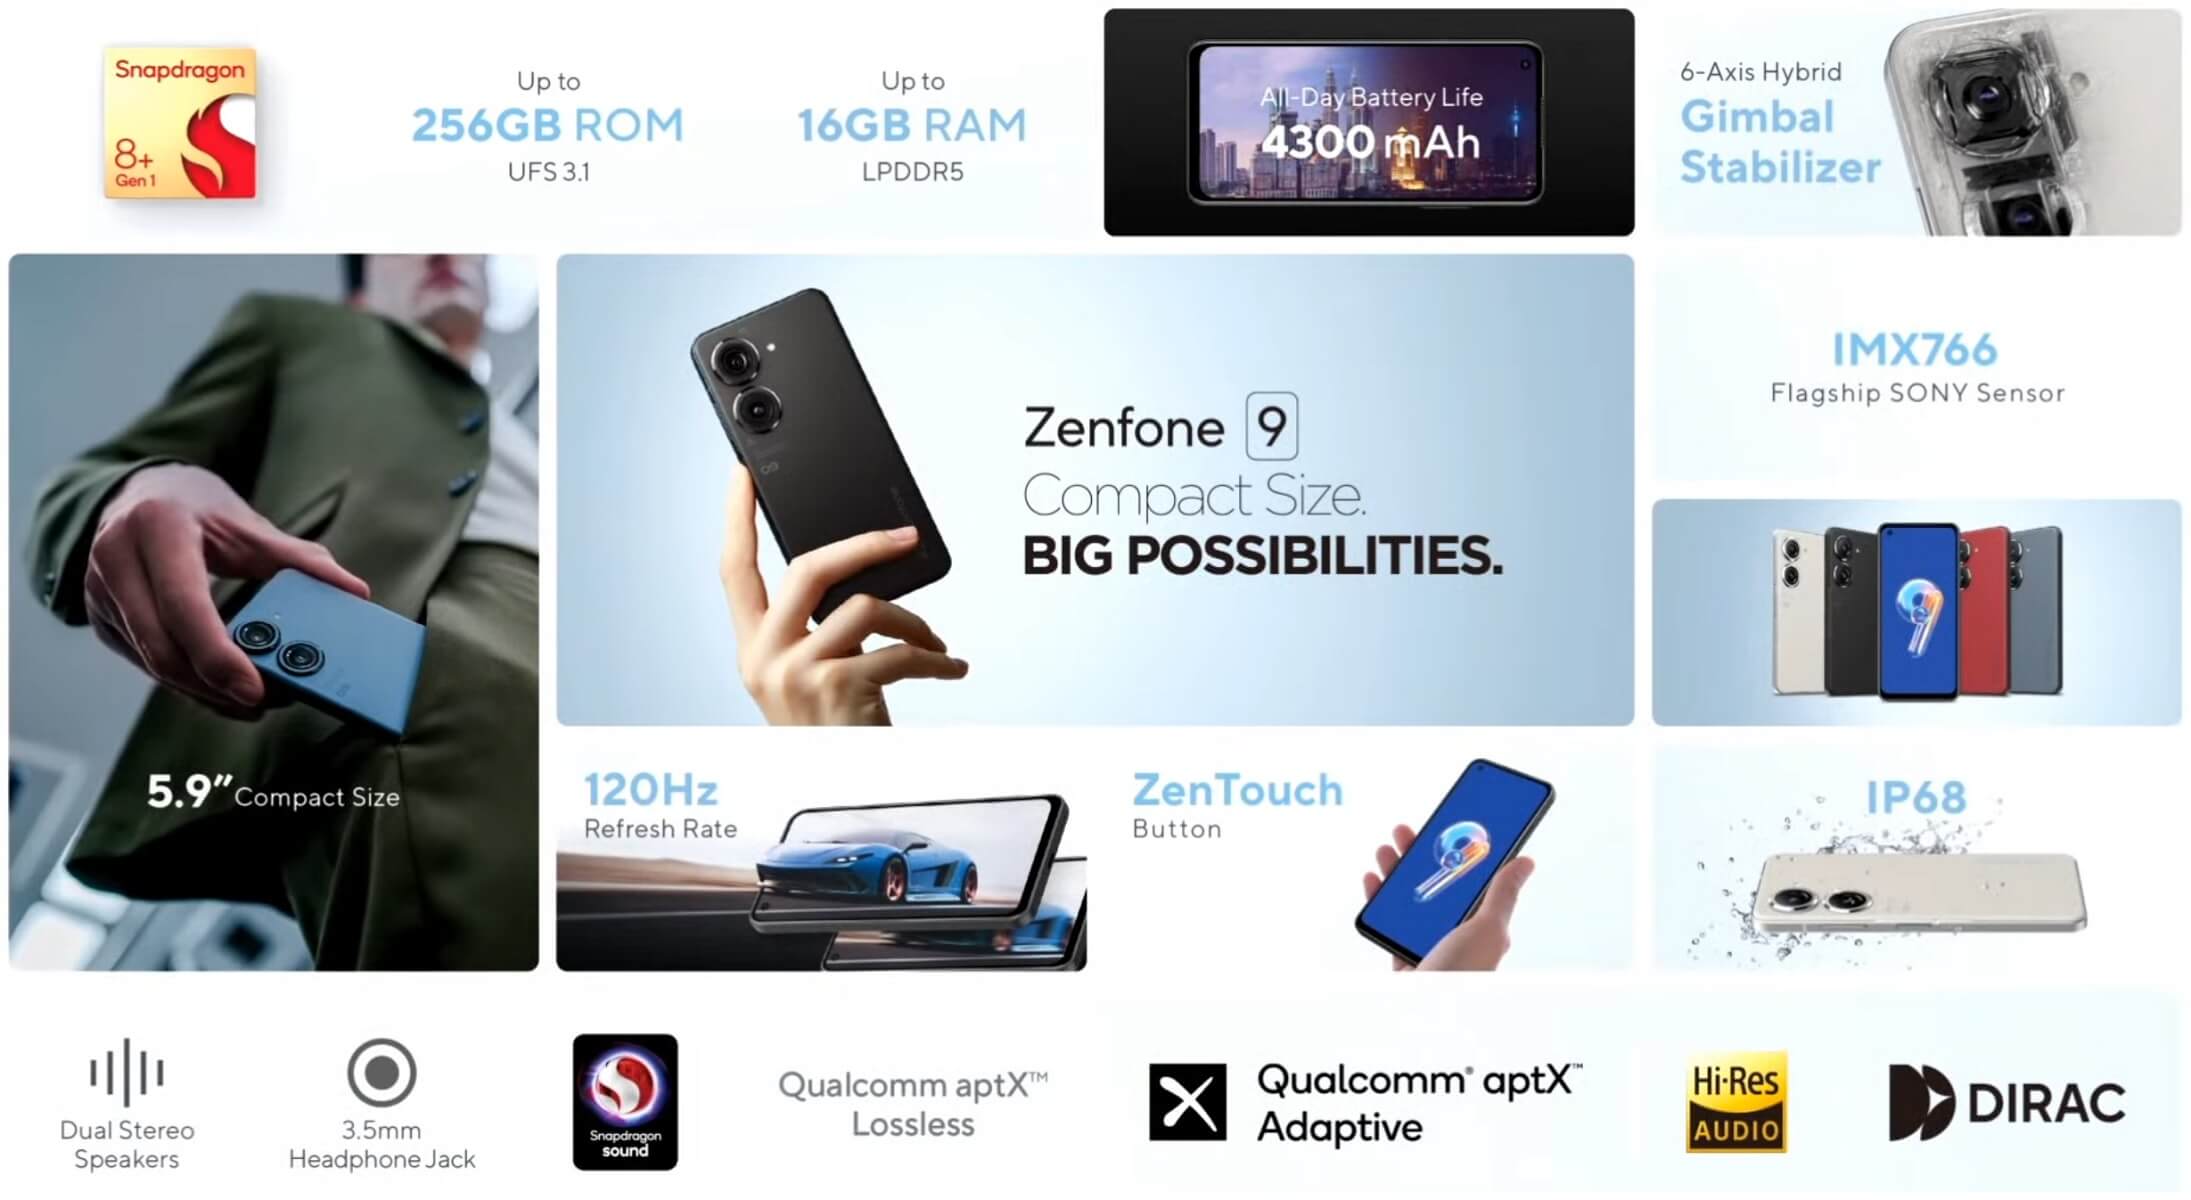 Asus Zenfone 9 features